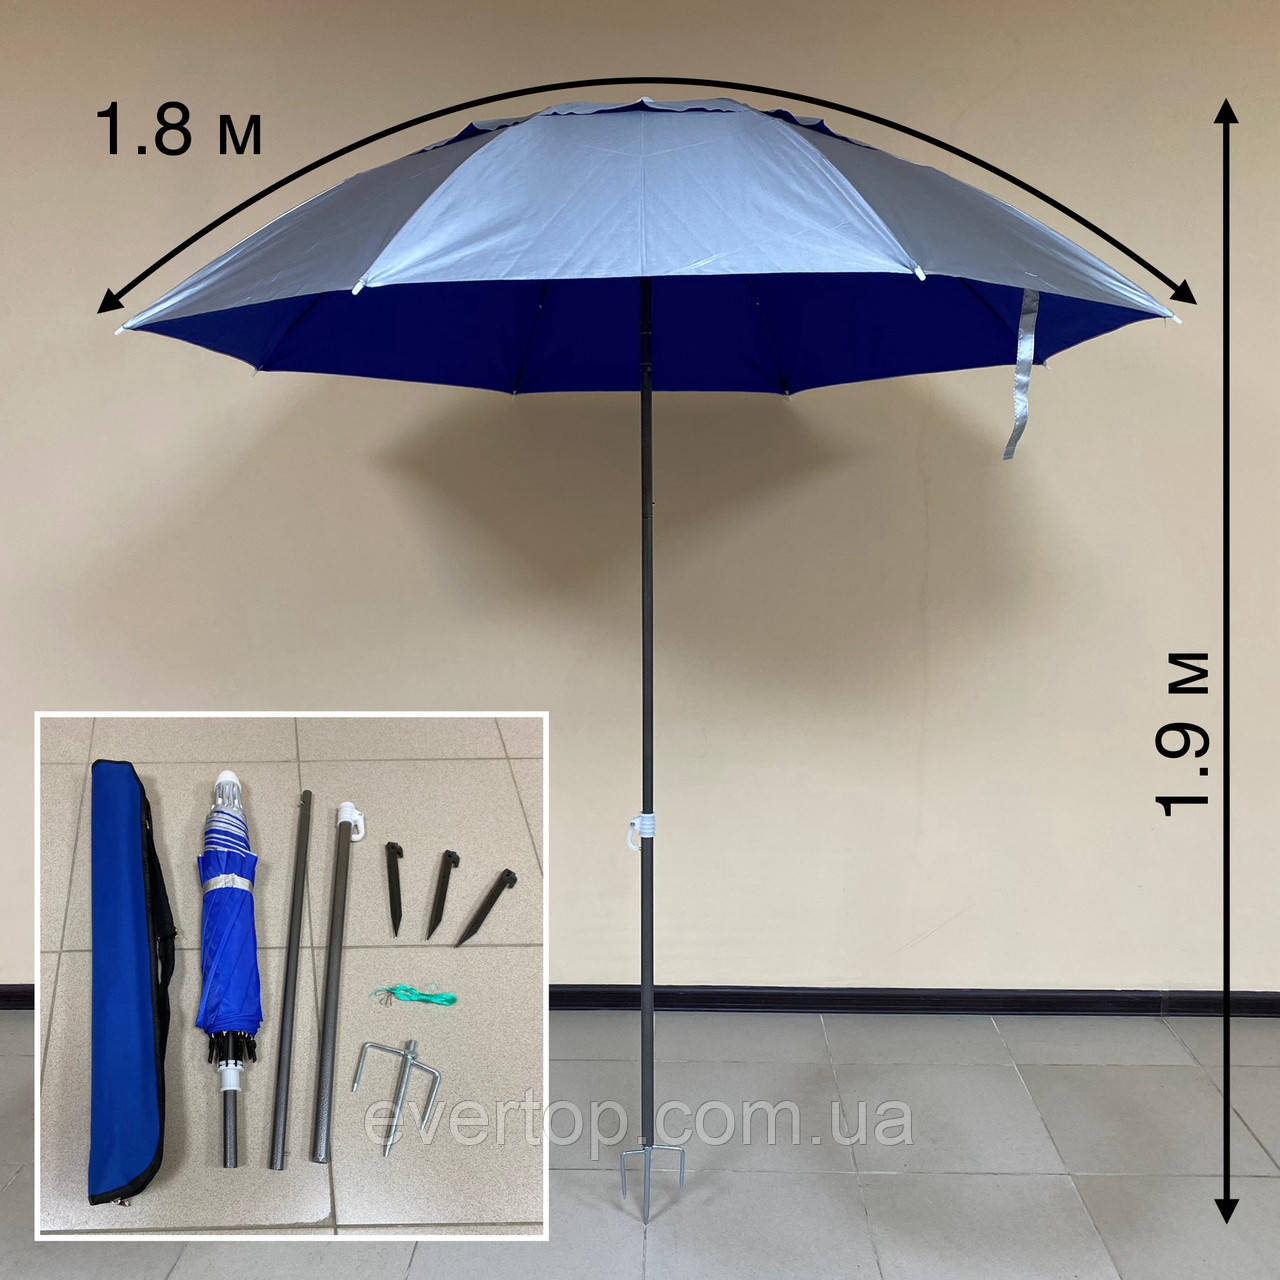 Пляжна парасоля 1.80 см + Full комплект аксесуарів